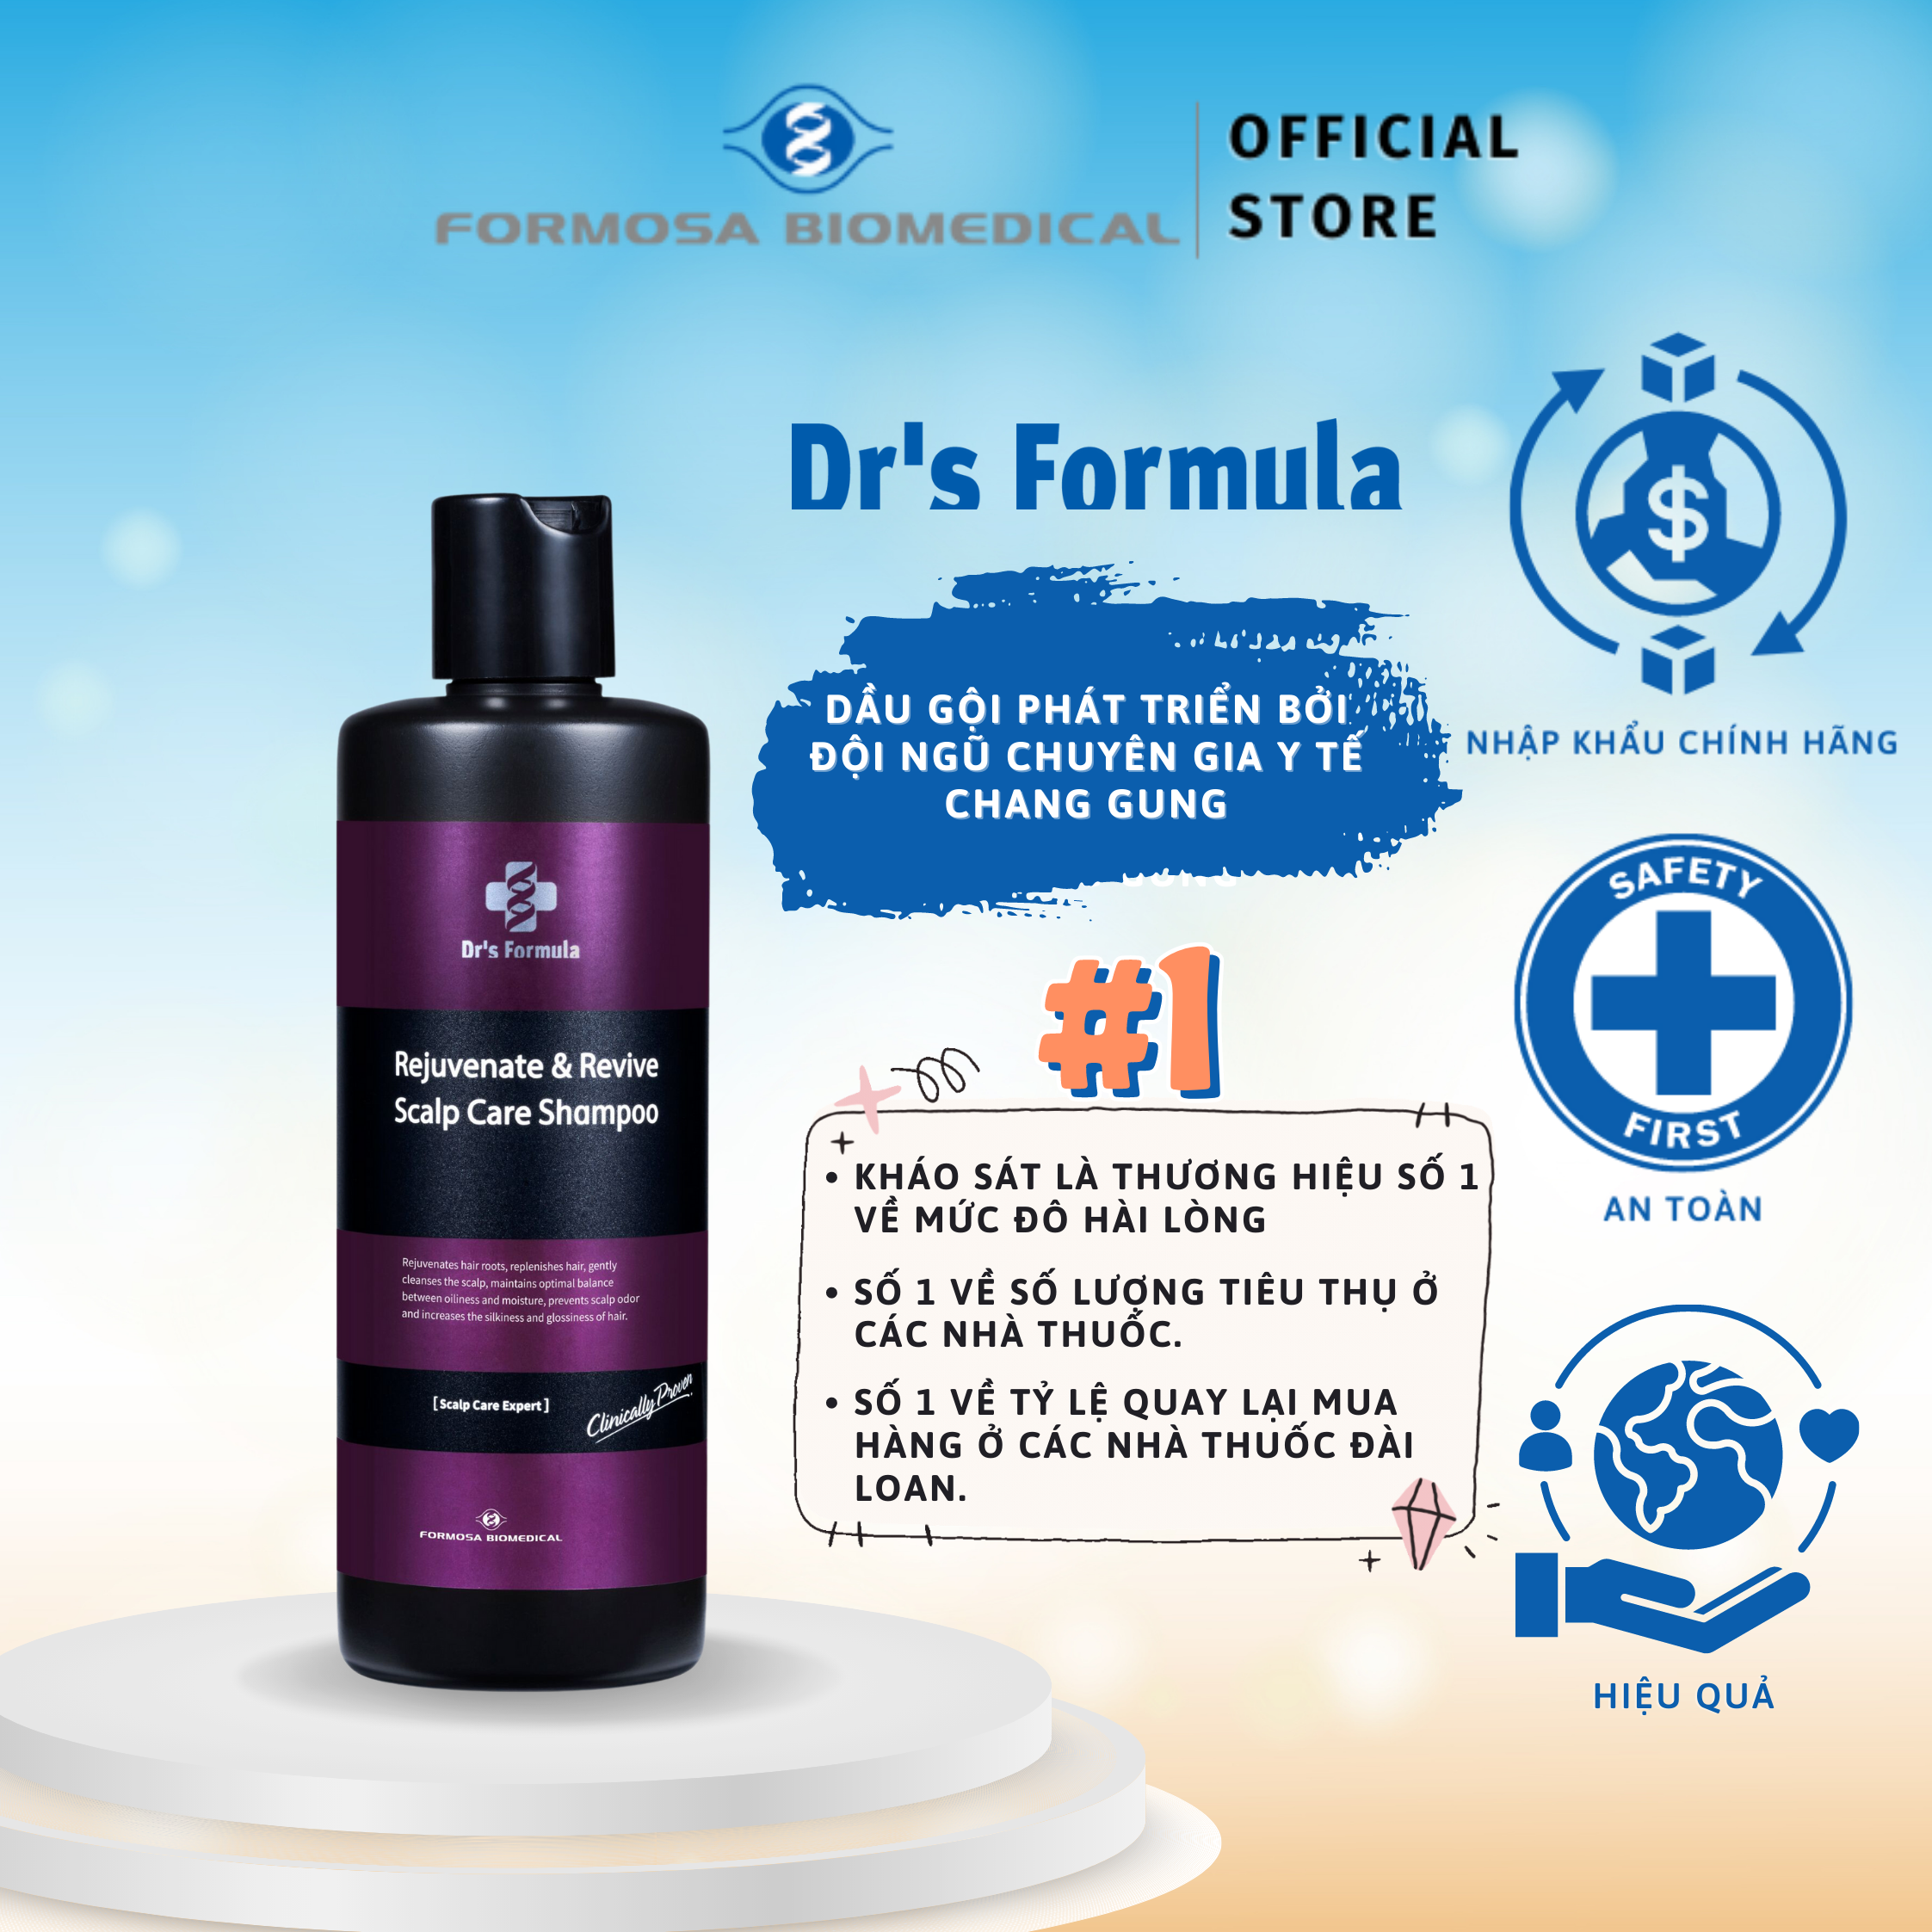 Dầu Gội Dưỡng Đen Và Trẻ Hóa Tóc Dr's Formula Rejuvenate &amp; Revive Scalp Care Shampoo